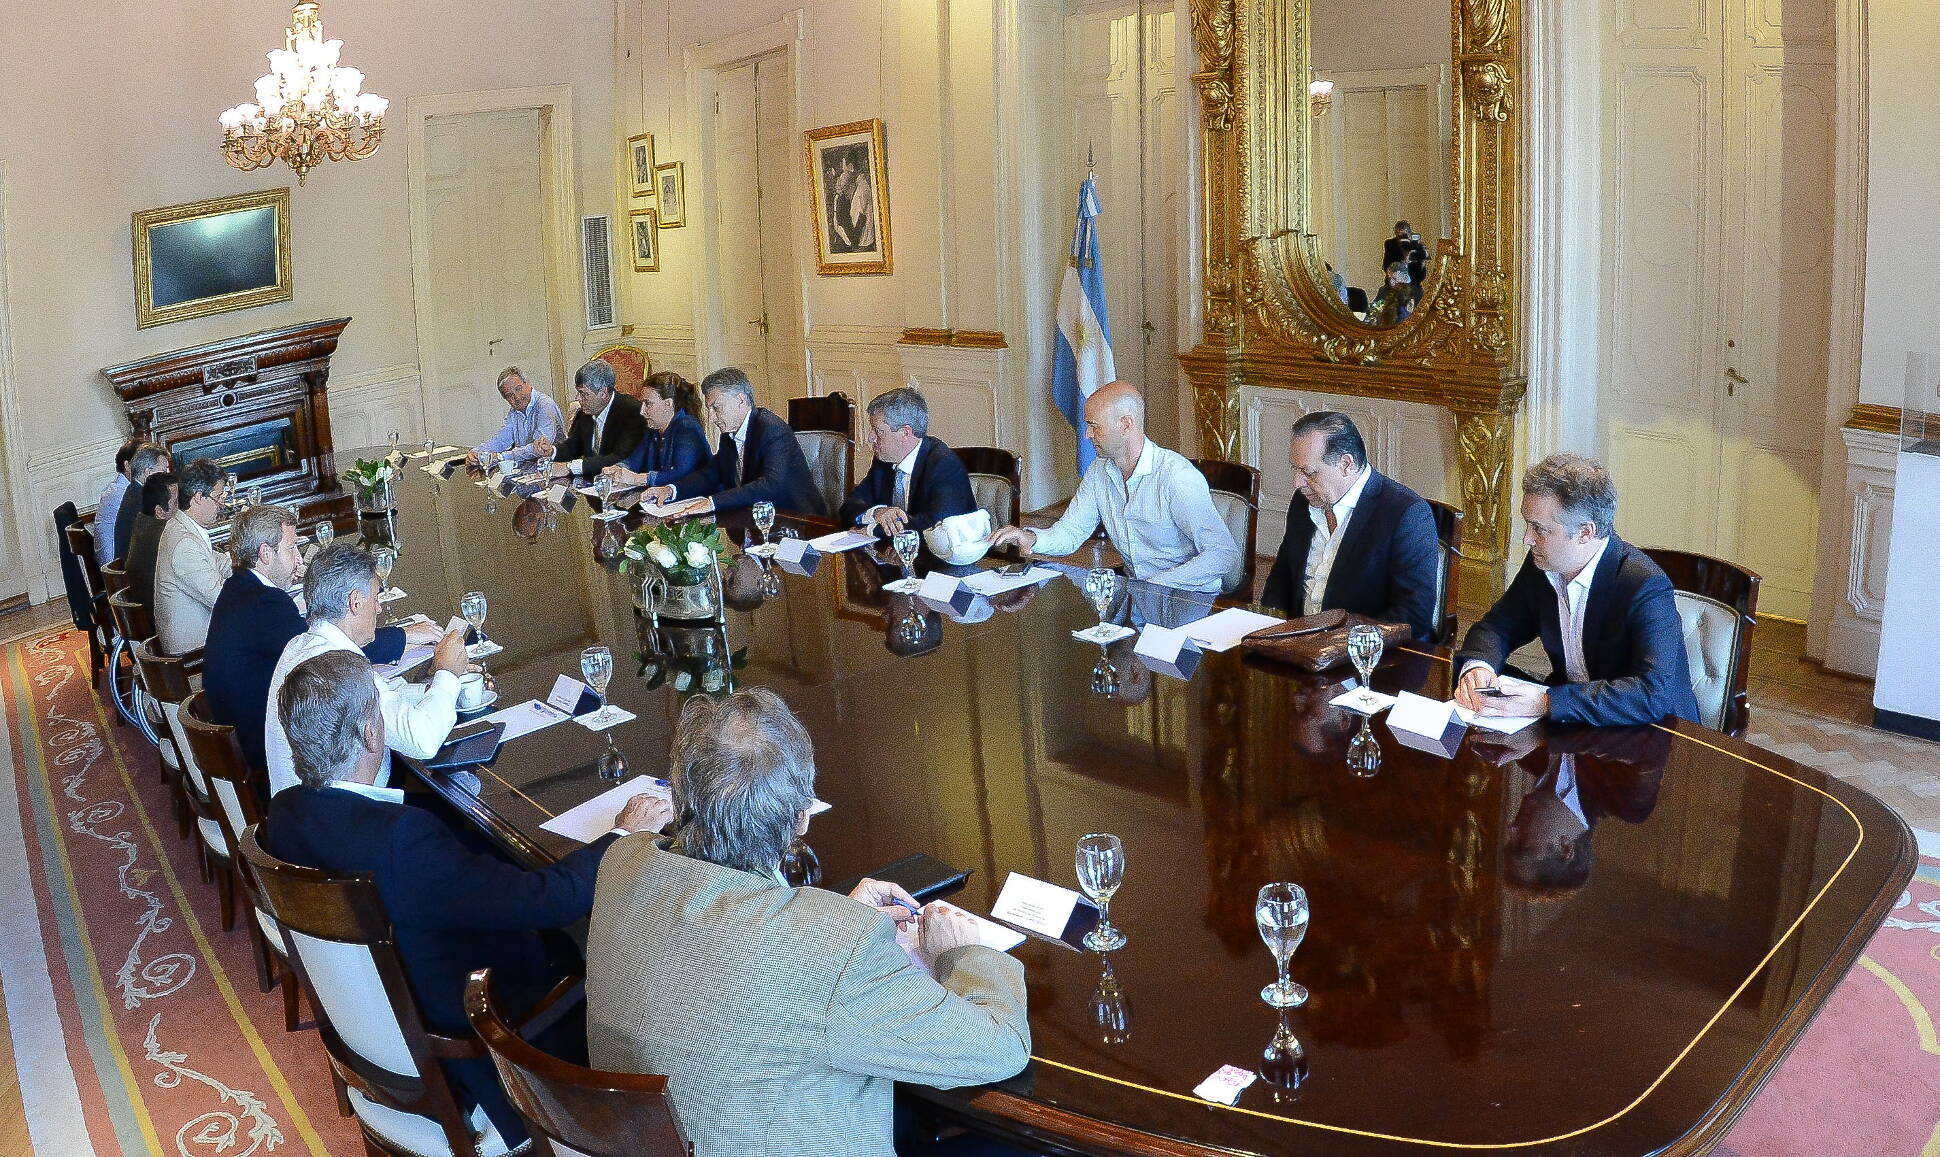 El Presidente encabezó esta mañana una nueva reunión de gabinete en la Casa Rosada.